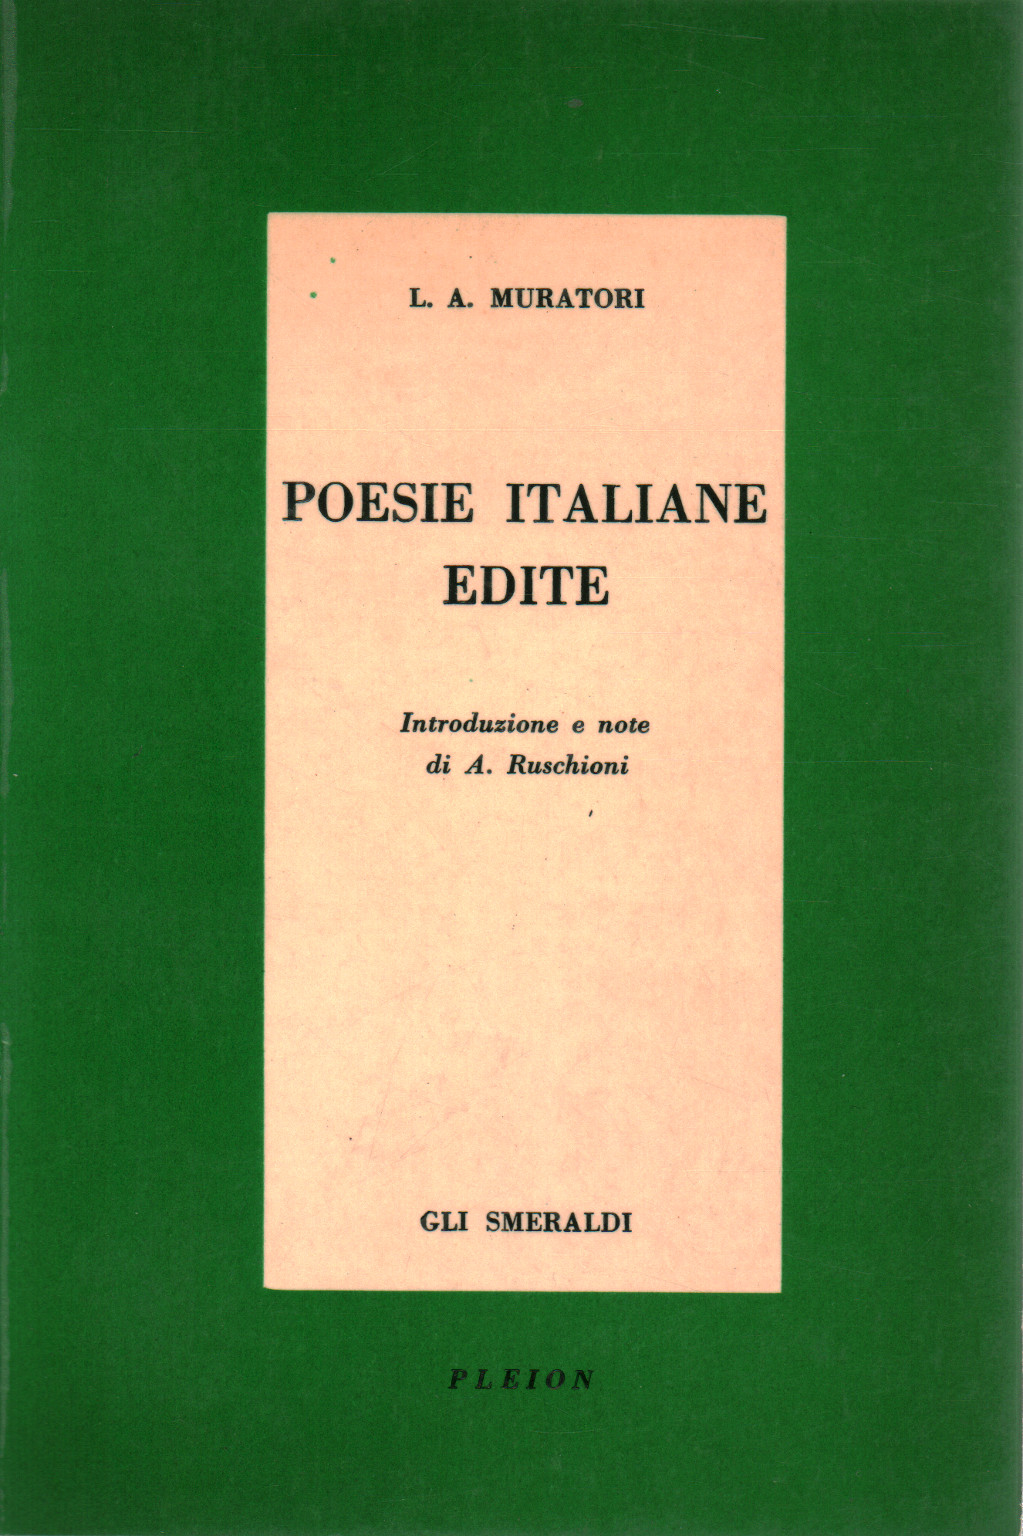 Poemas en italiano, publicada, s.una.